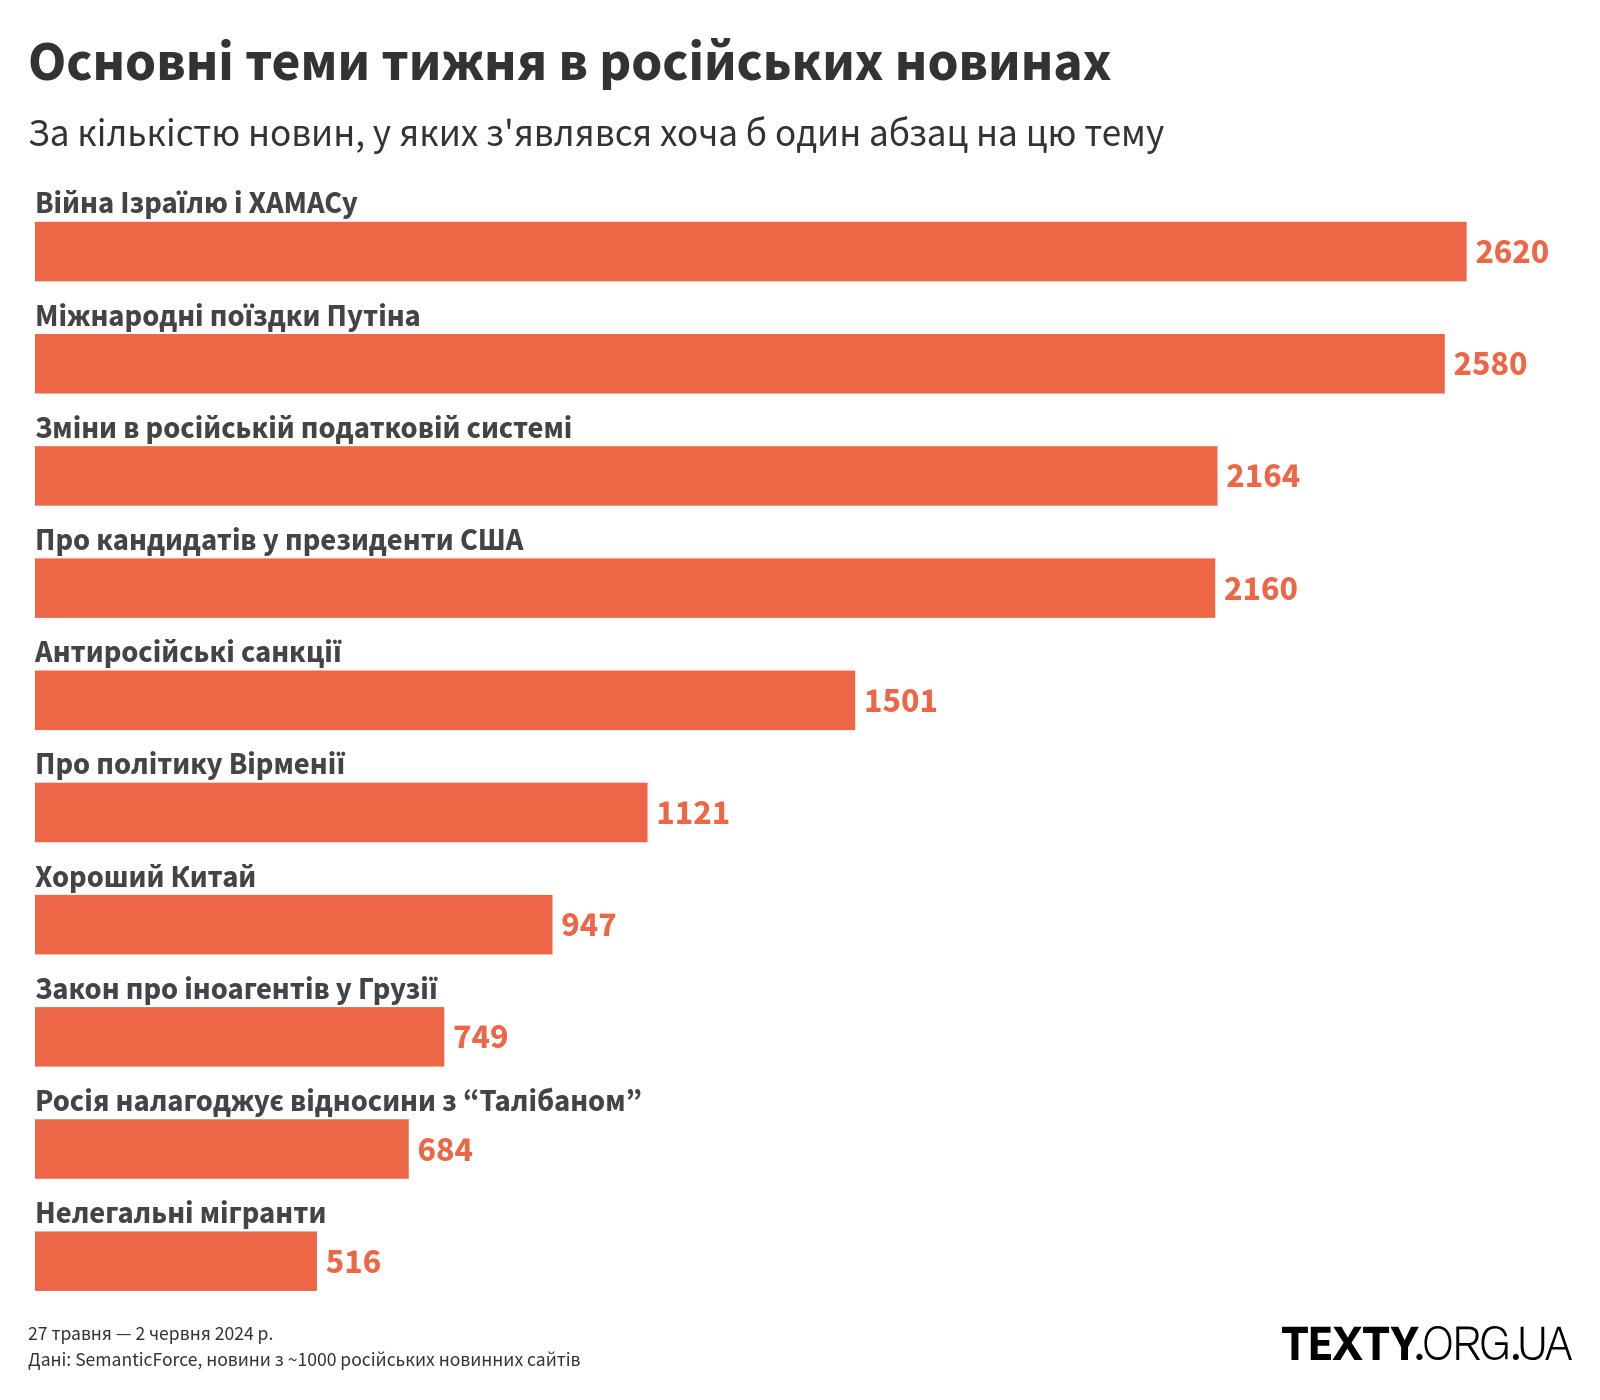 Основні теми тижня в російських новинах